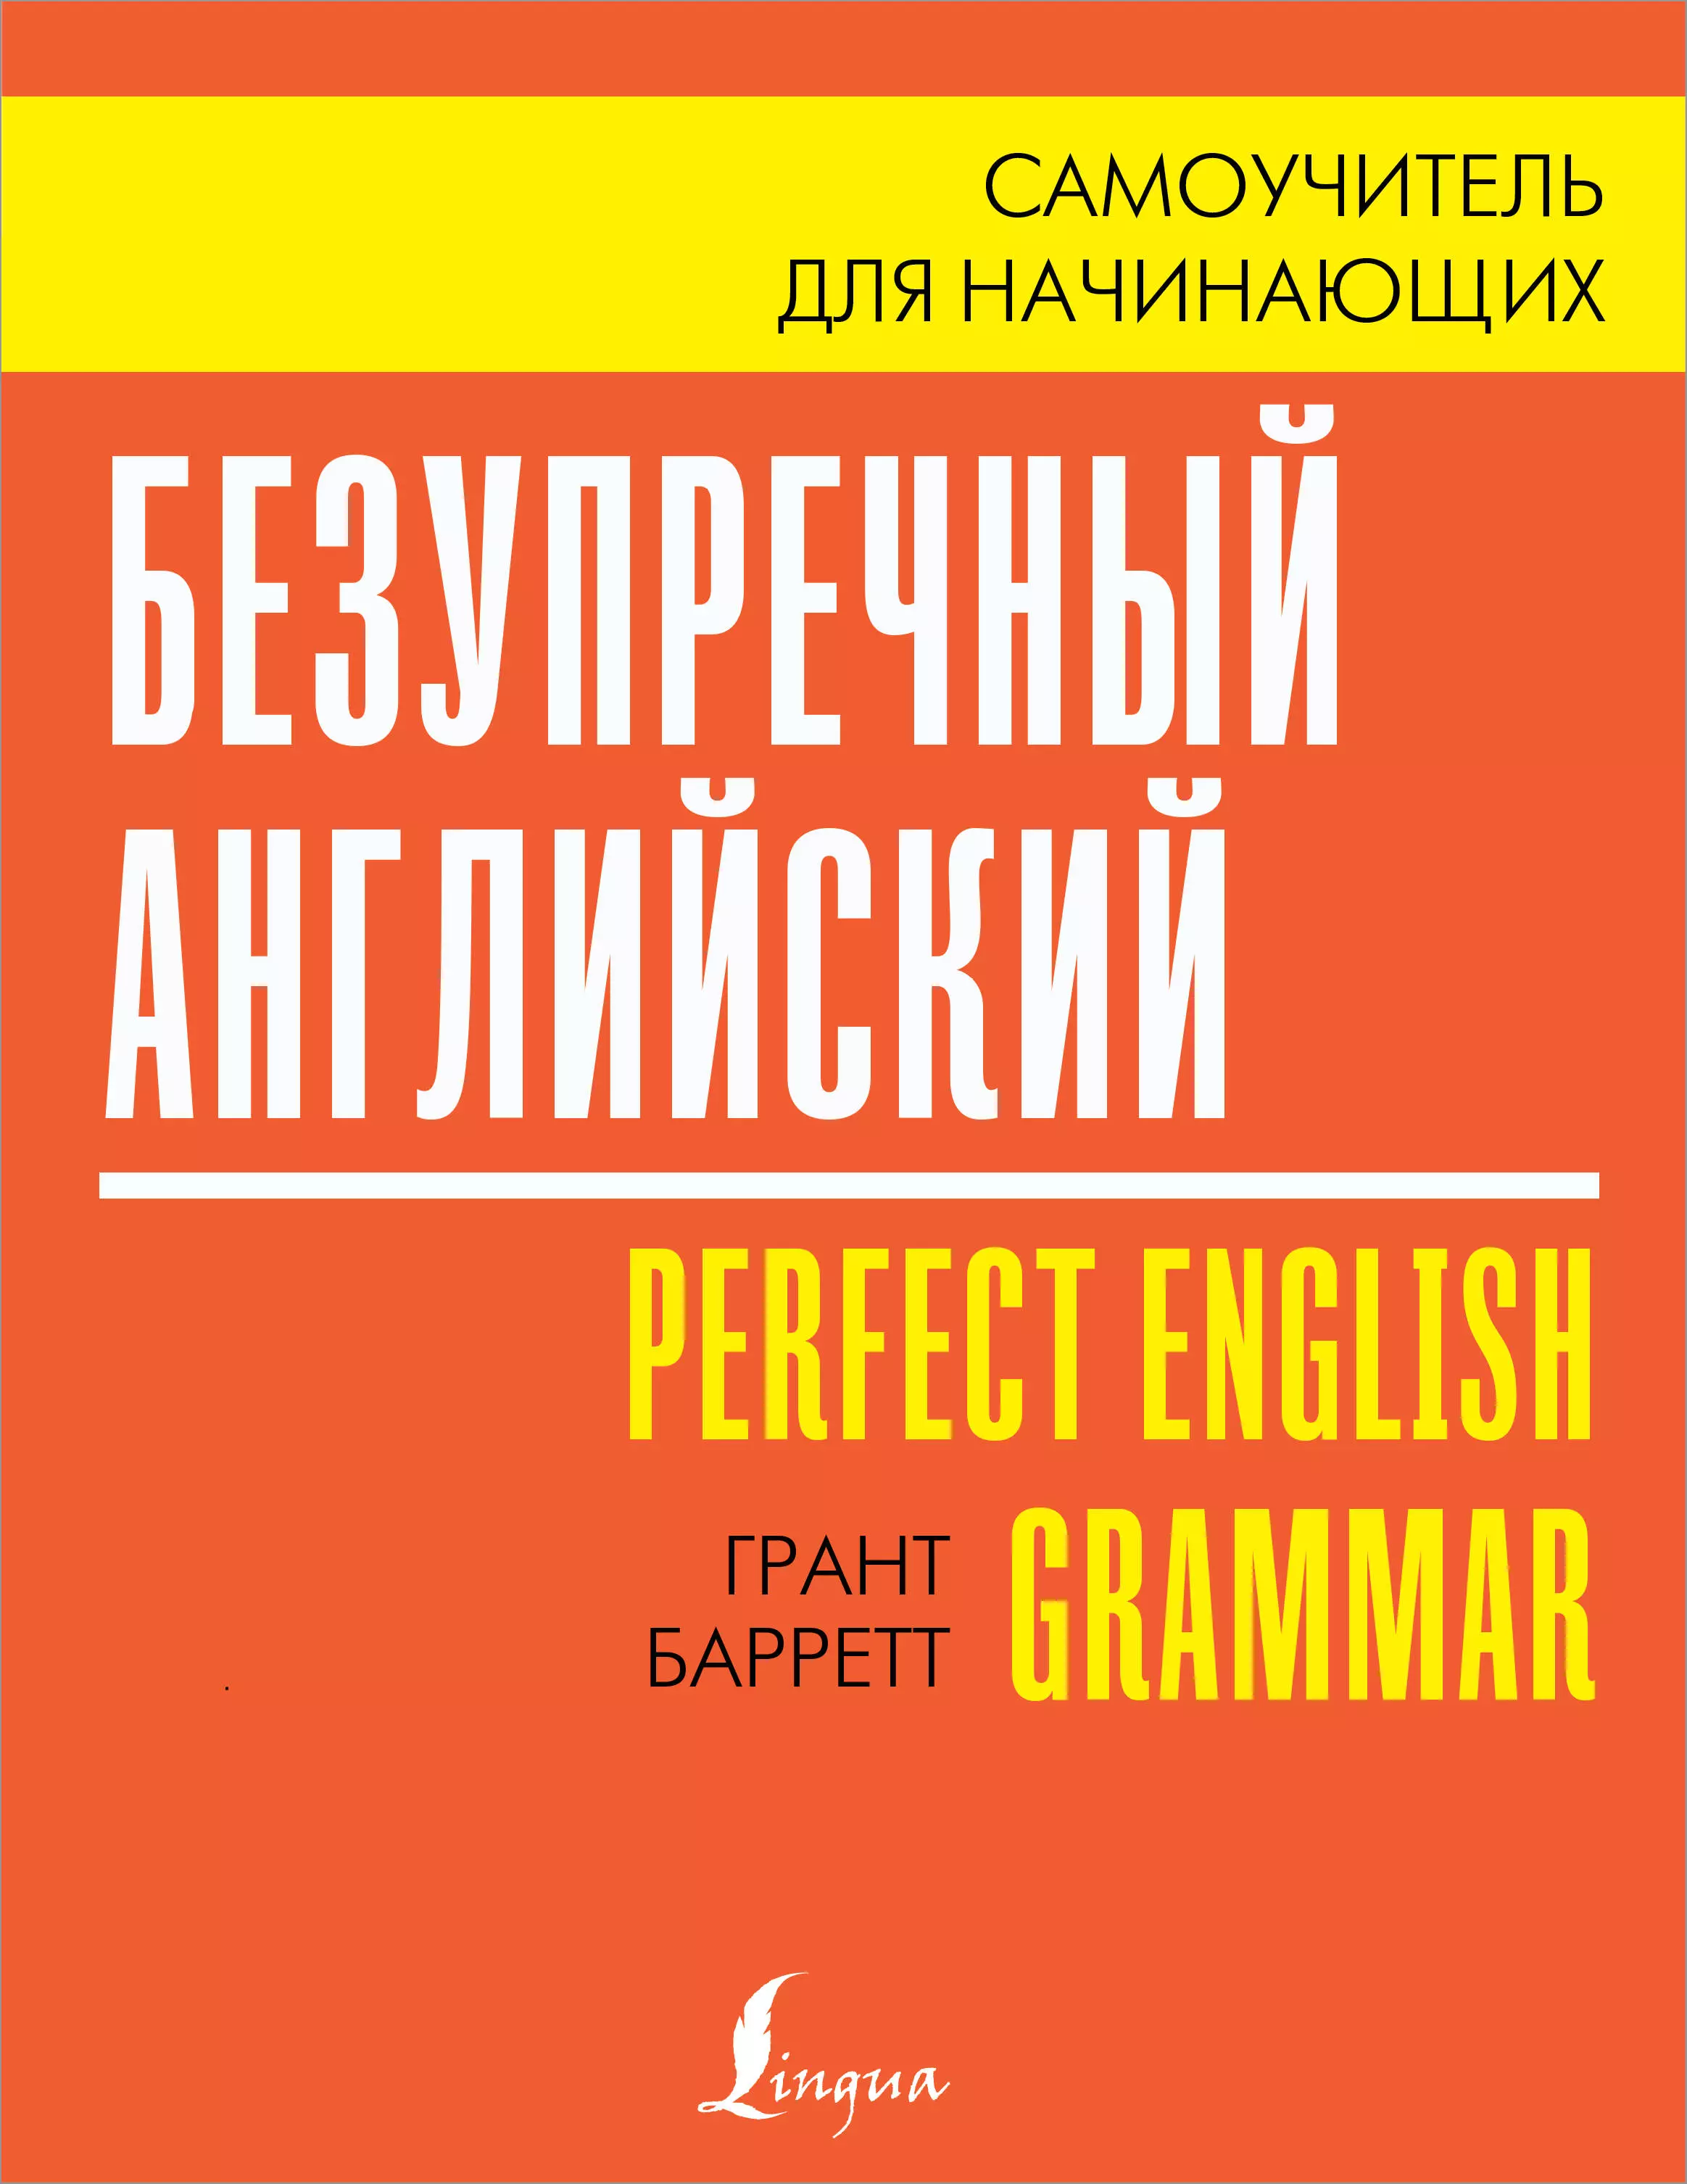 Барретт Грант - Безупречный английский / Perfect English Grammar. Самоучитель для начинающих